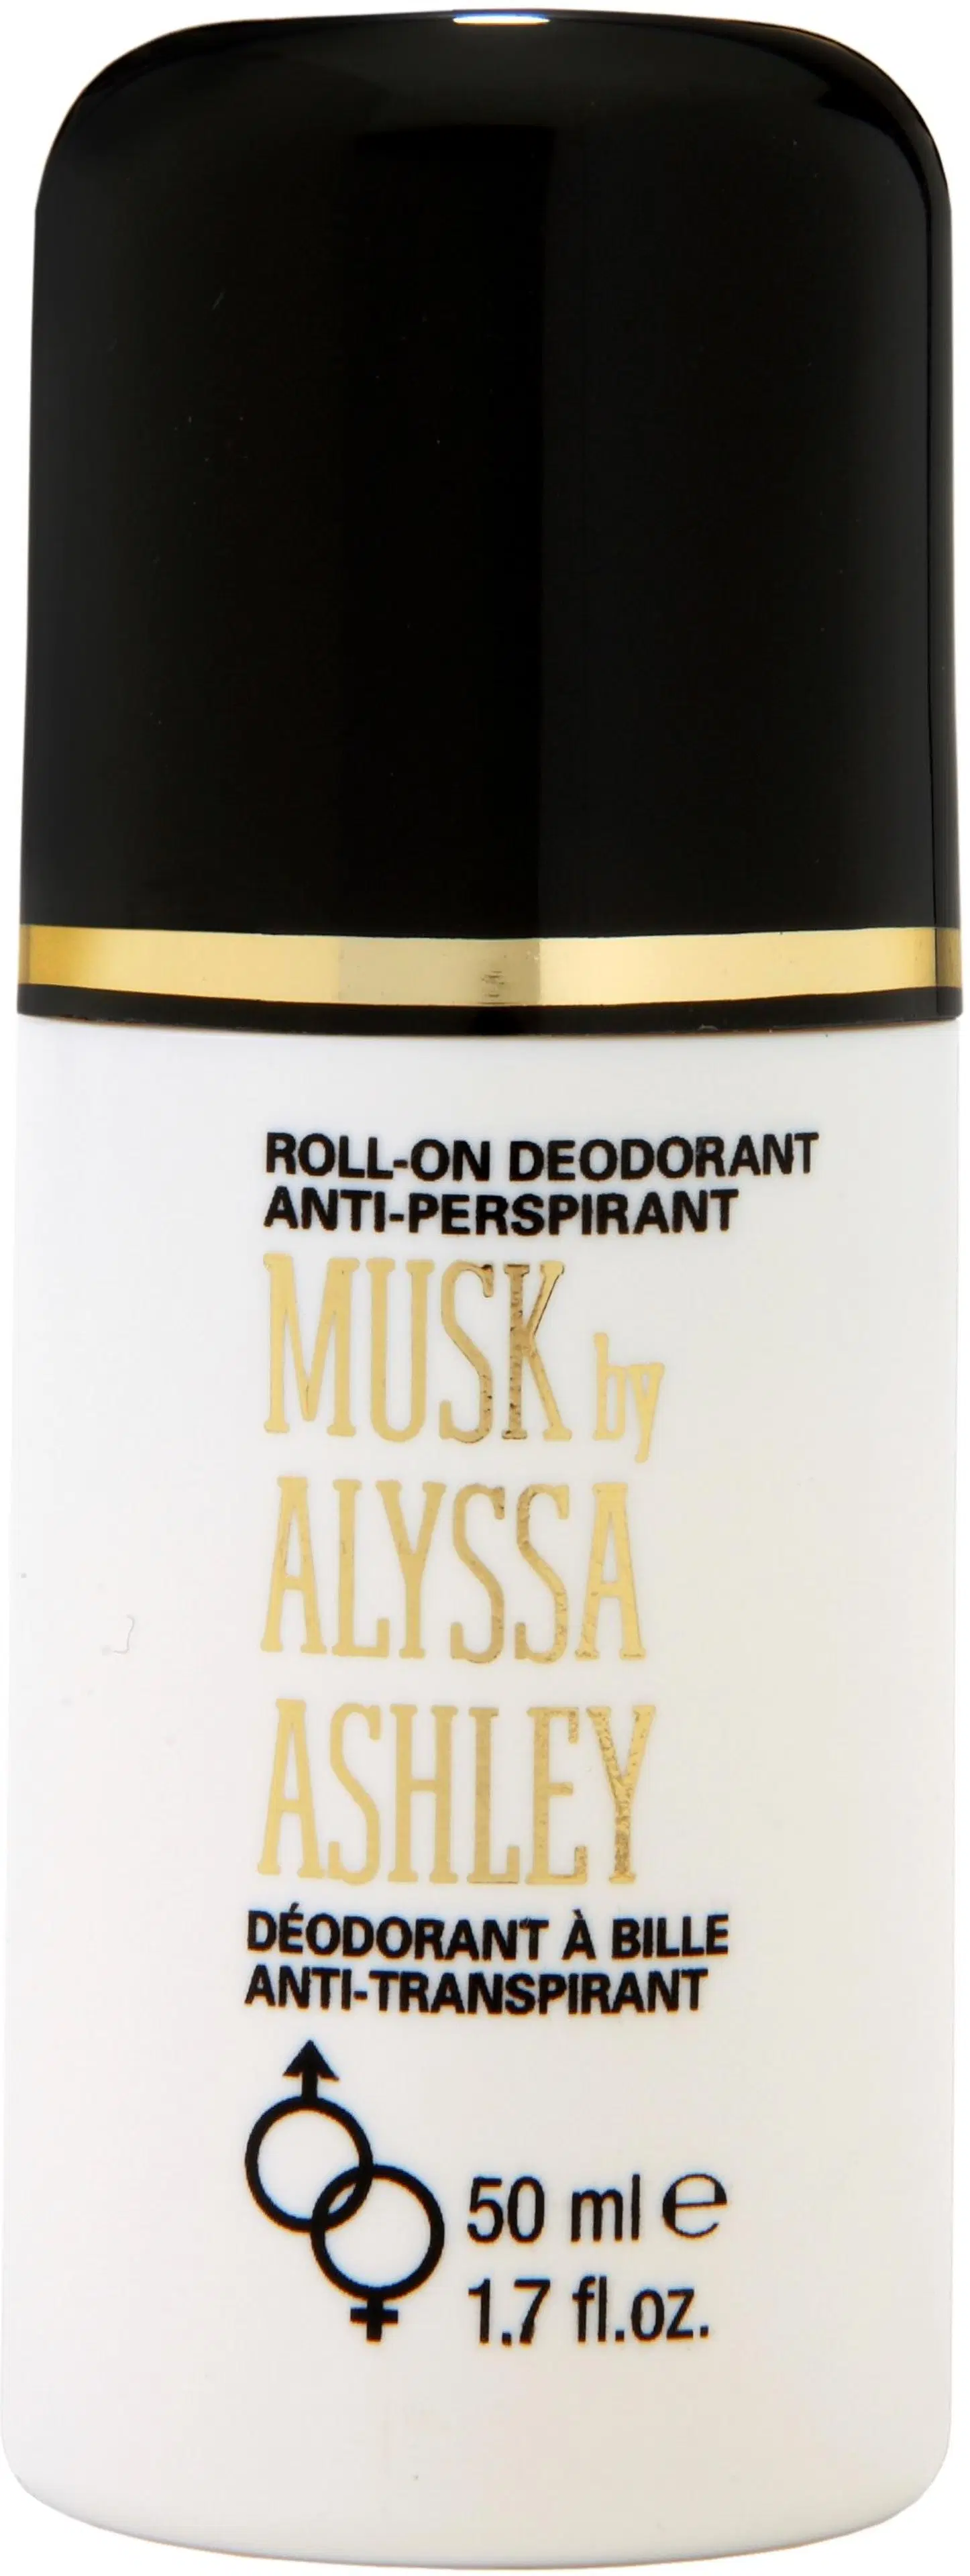 Alyssa Ashley Musk Deo Roll-on 50 ml